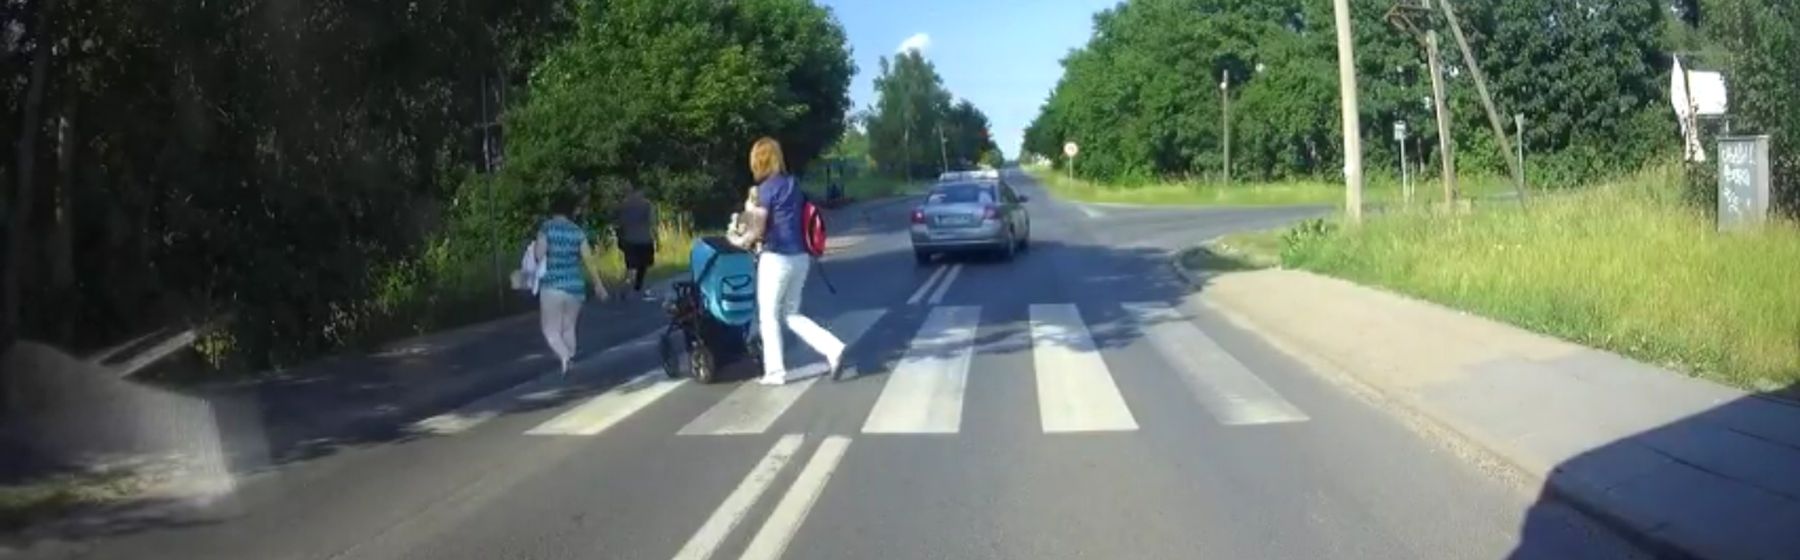 Niebezpieczne zachowanie taksówkarza na ul. Fortecznej. “Prawie potrącił ludzi na pasach” (Film)